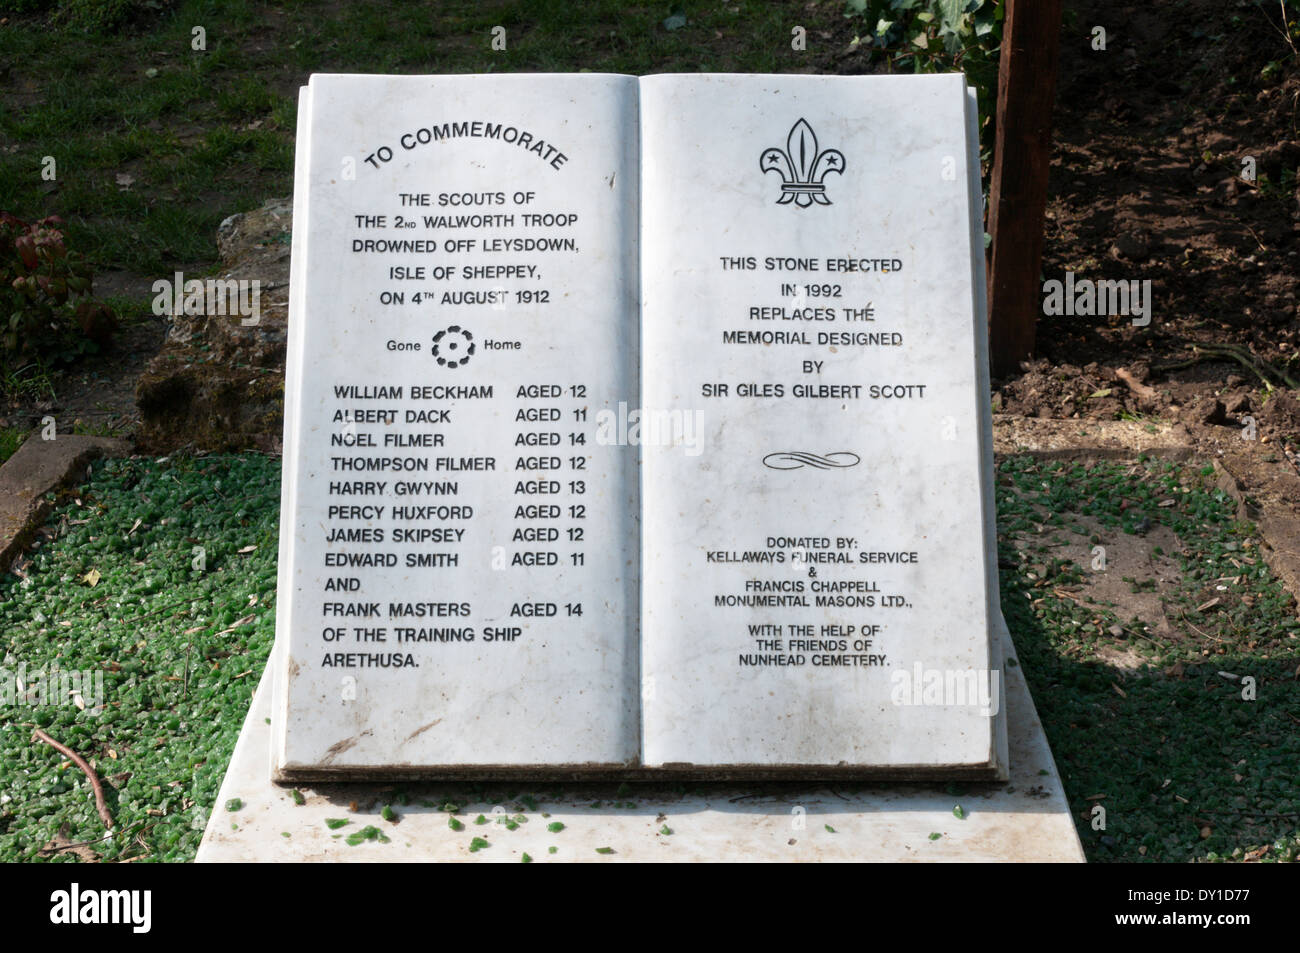 Un monumento nel cimitero di Nunhead a un gruppo di boy scout ucciso nella tragedia Leysdown. Vedere la descrizione per i dettagli. Foto Stock